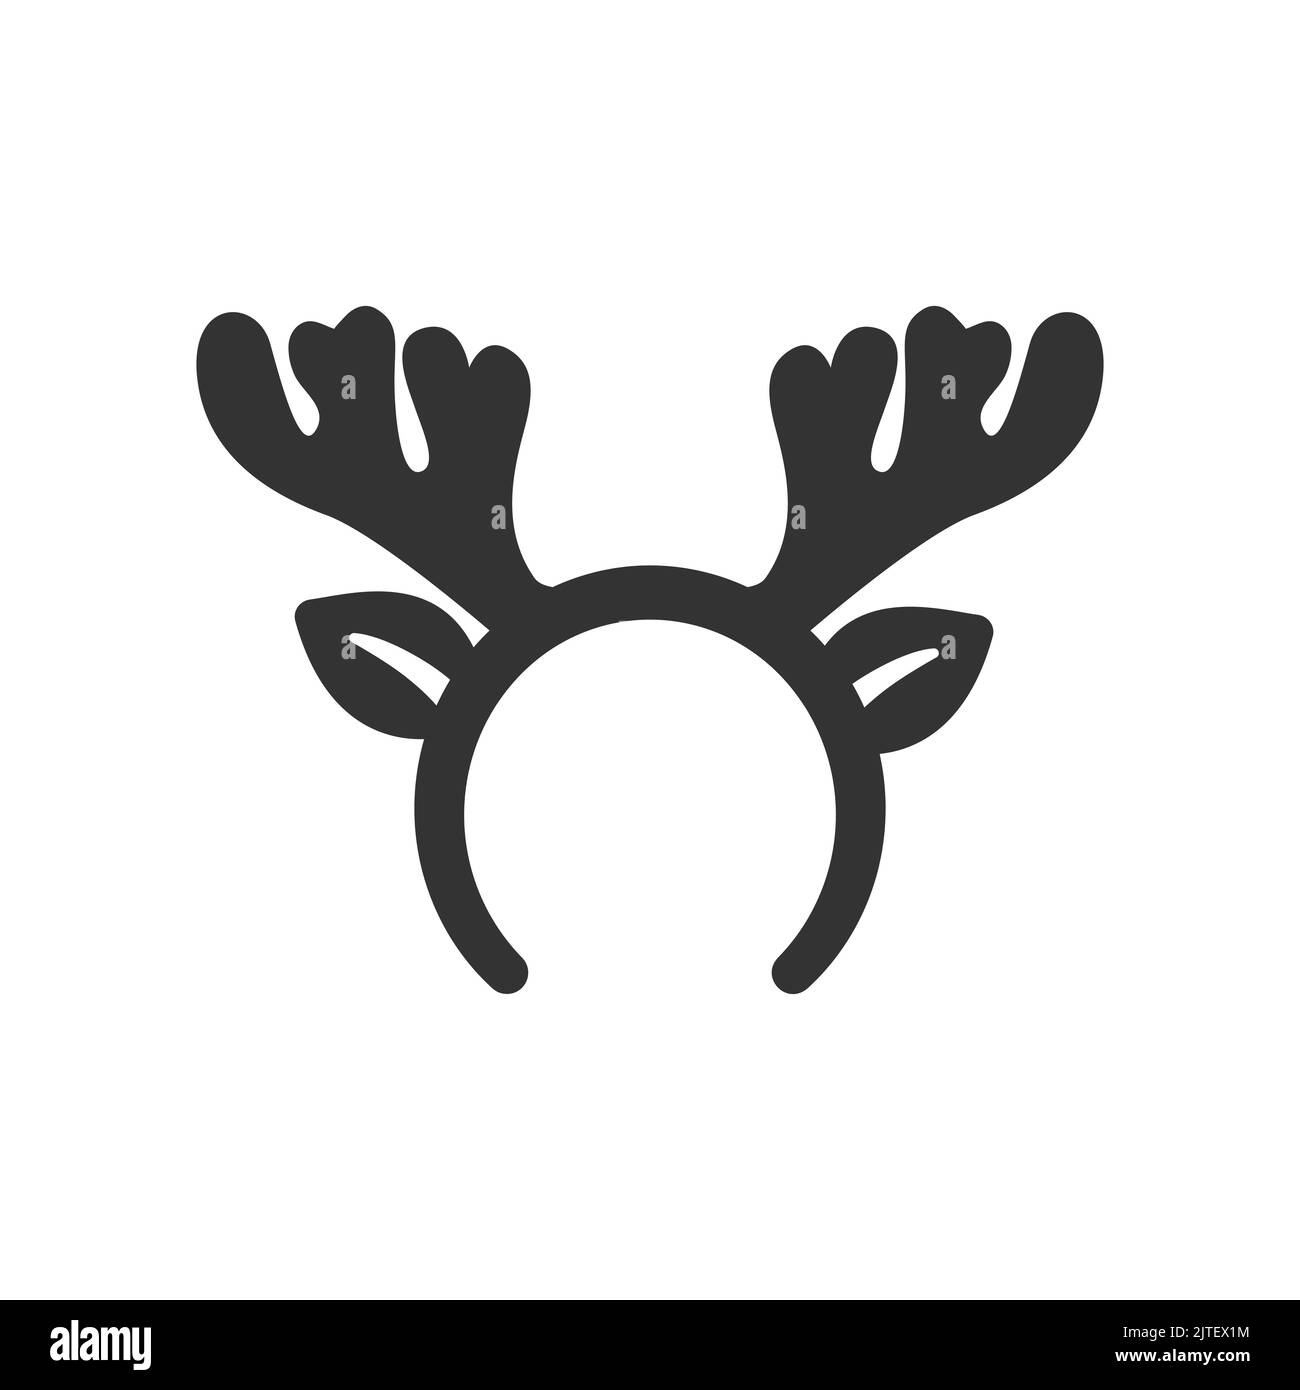 Cuernos de ciervo: para tarjetas de felicitación navideñas navideñas o  carteles, pancartas, adhesivos. ilustración de vector dibujado a mano para  la temporada de año nuevo.